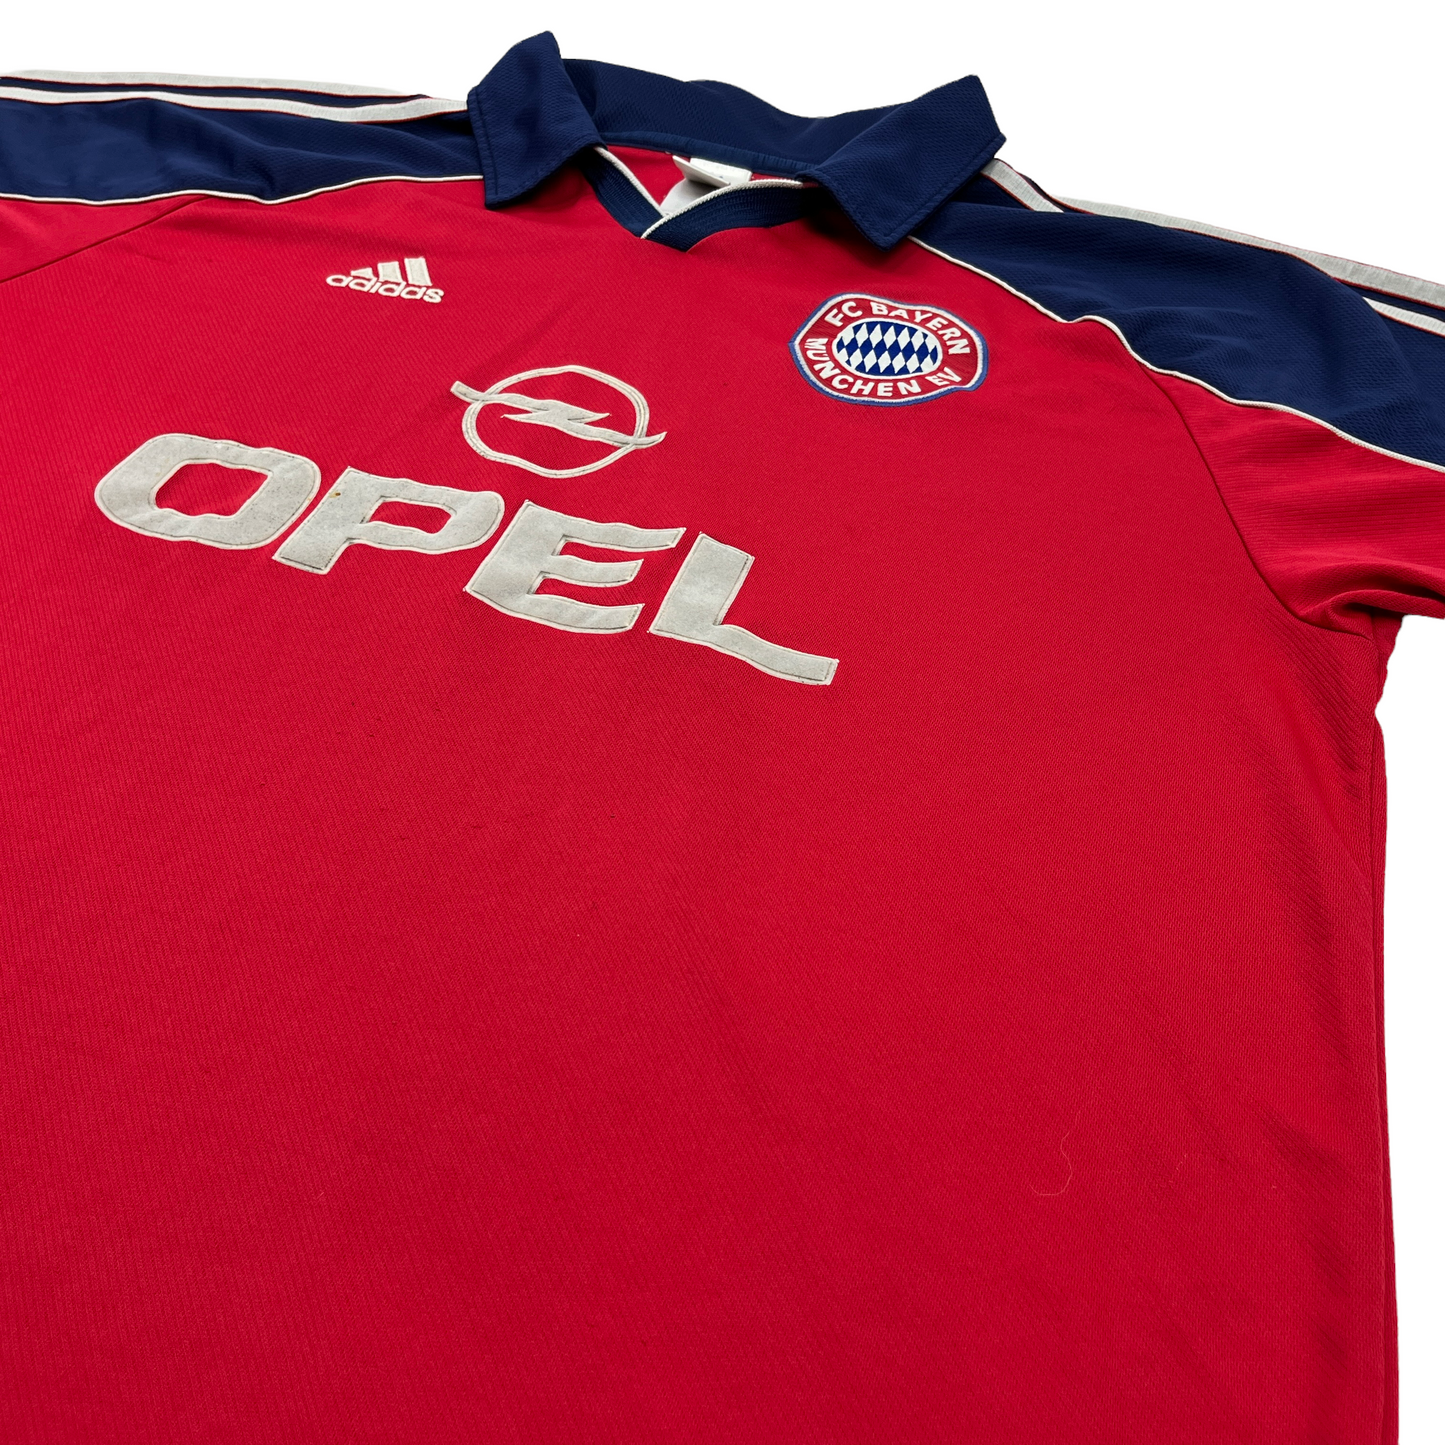 0972 Adidas 00/99 Fc Bayern München Home Jersey